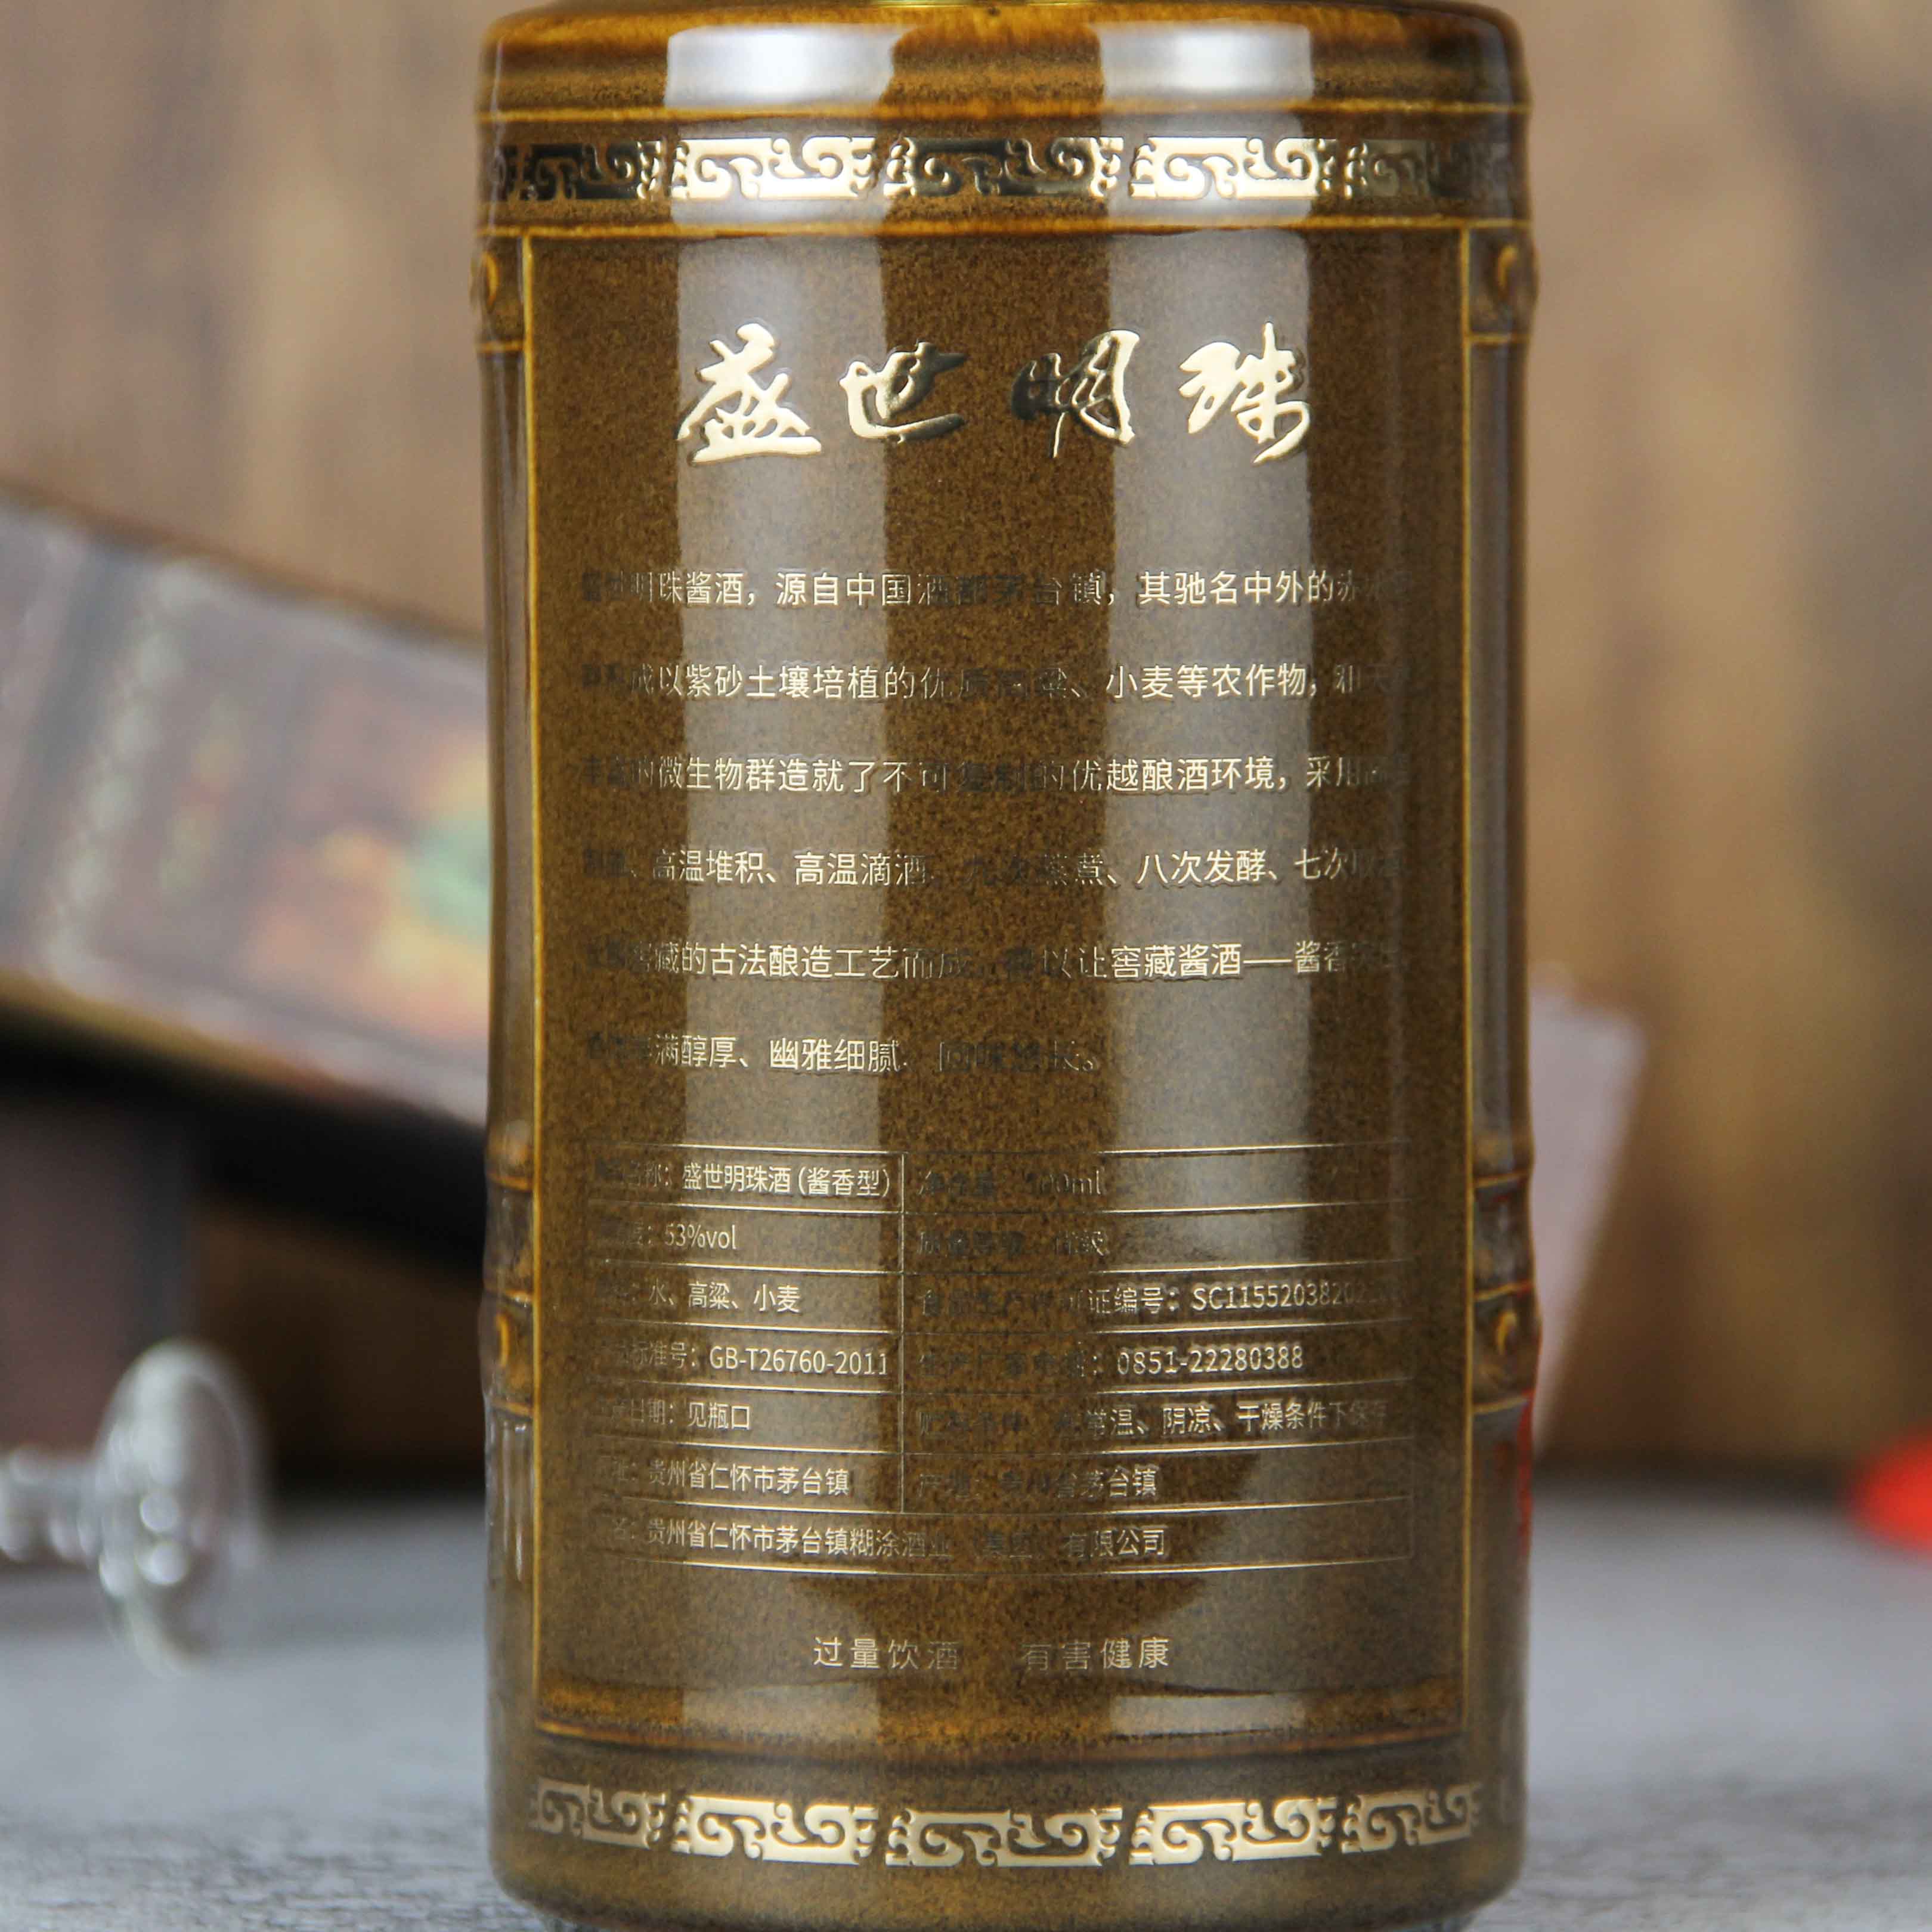 中国贵州茅台镇盛世酱珠酱香型白酒